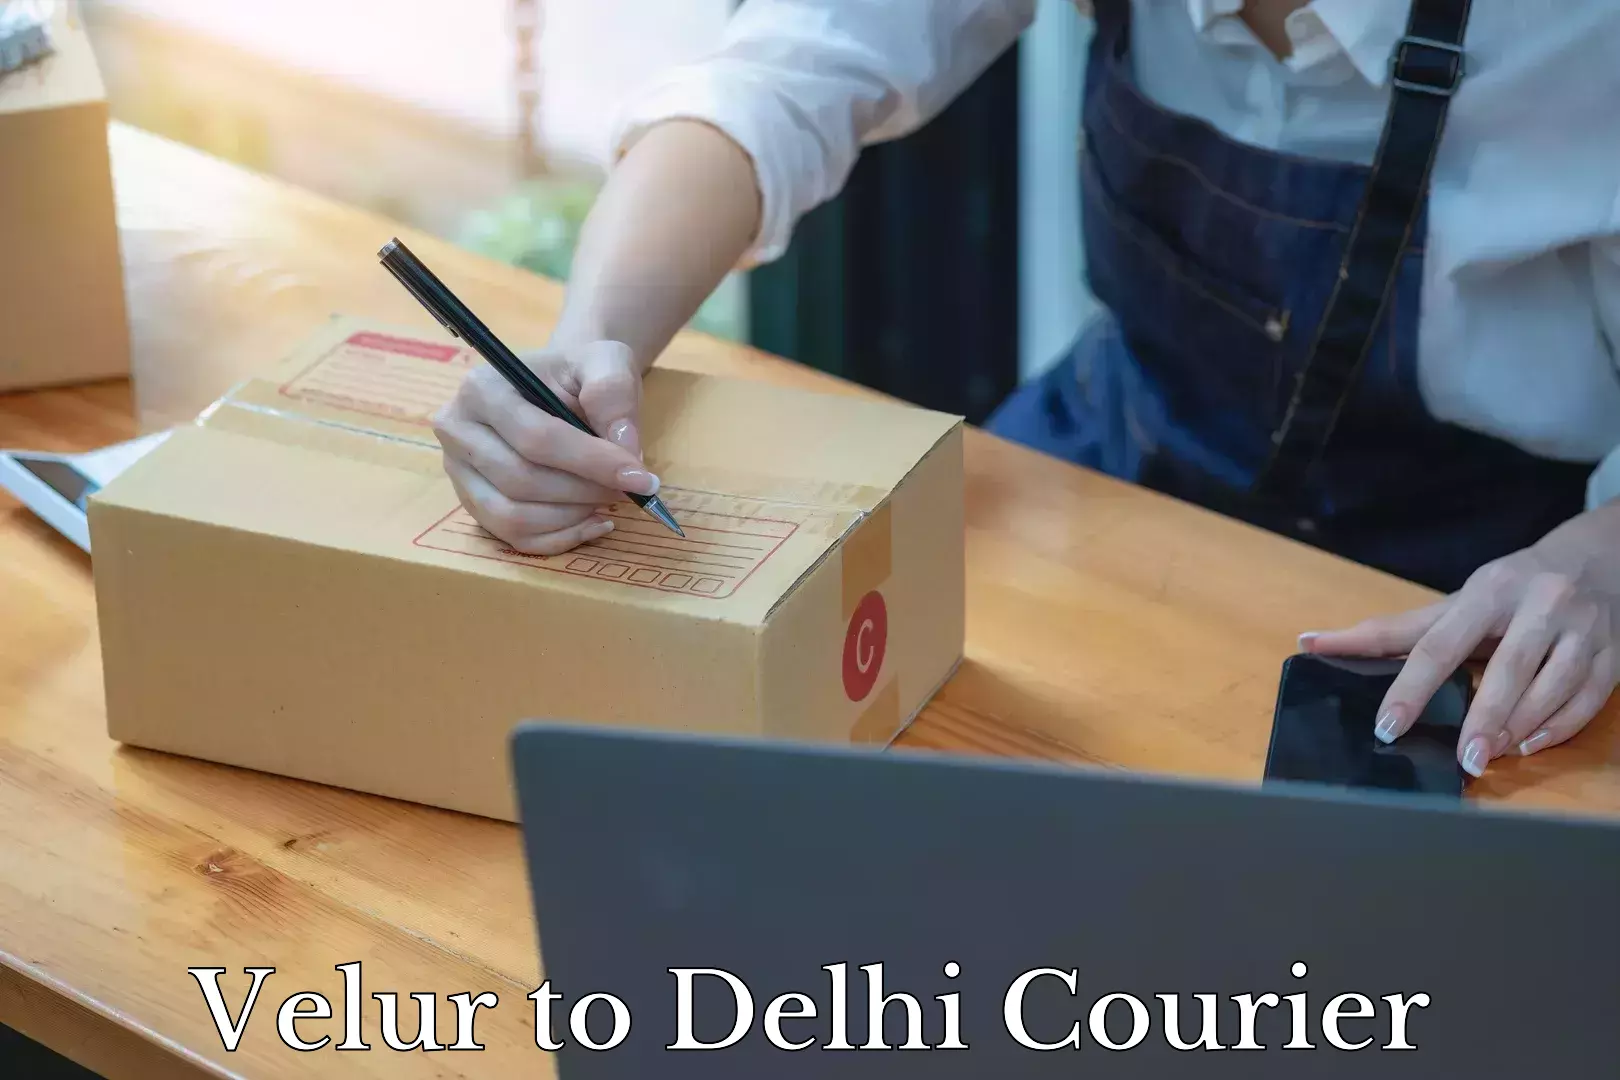 Household moving experts Velur to Delhi